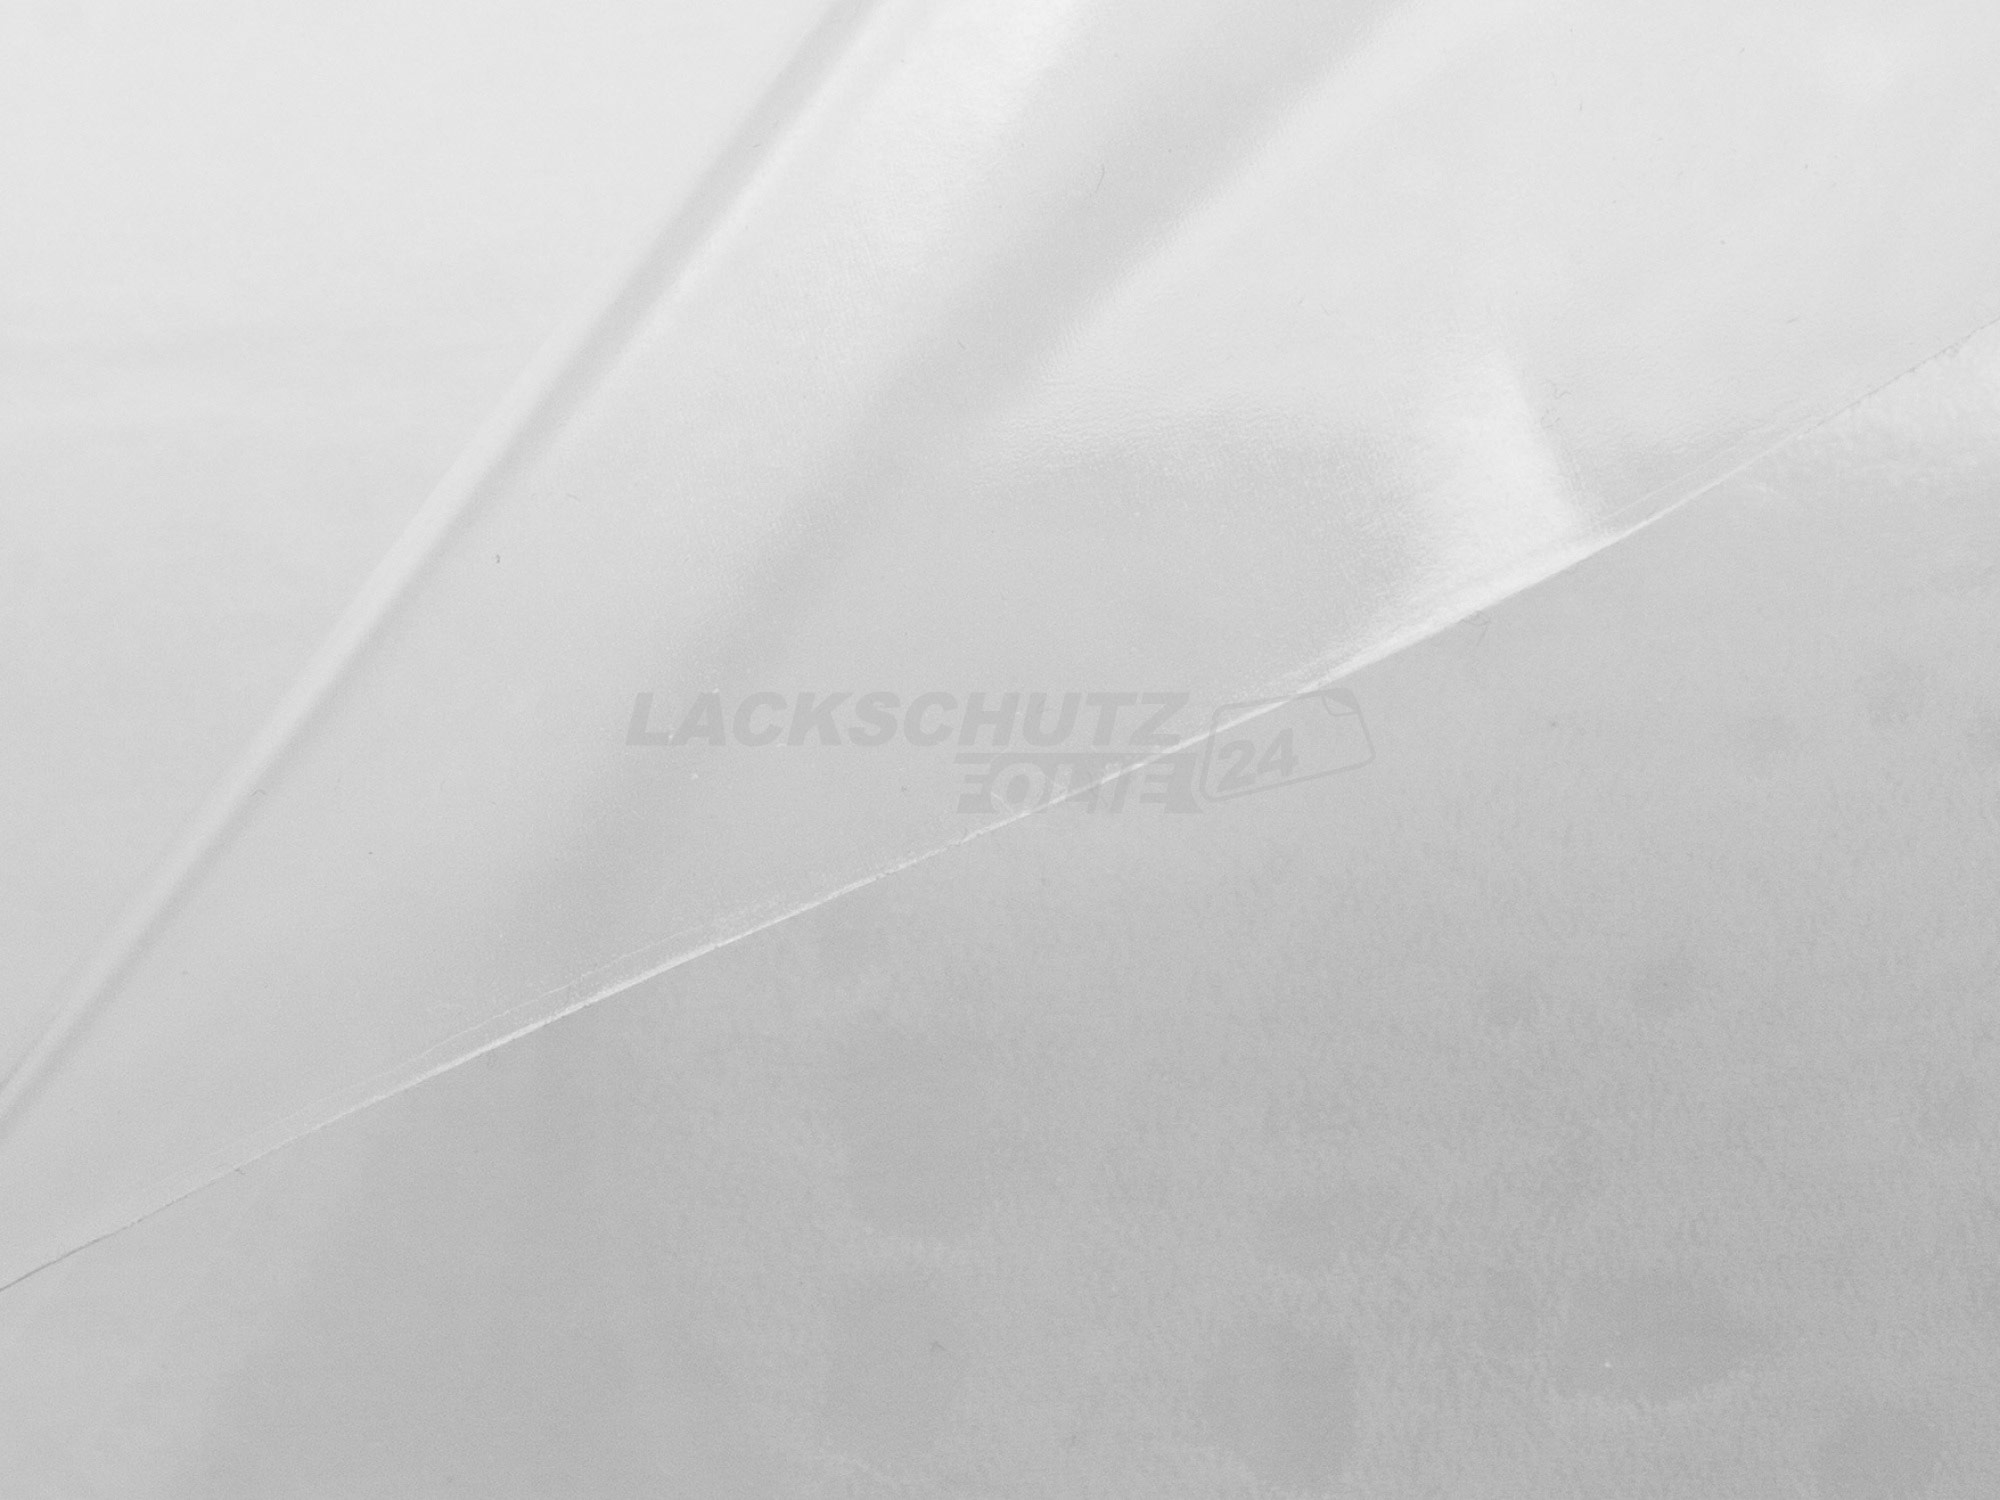 Ladekantenschutzfolie - Transparent Glatt Hochglänzend 240 µm stark für VW / Volkswagen Passat Limousine B8, Typ 3G, ab BJ 11/2014 + Faceliftmodell